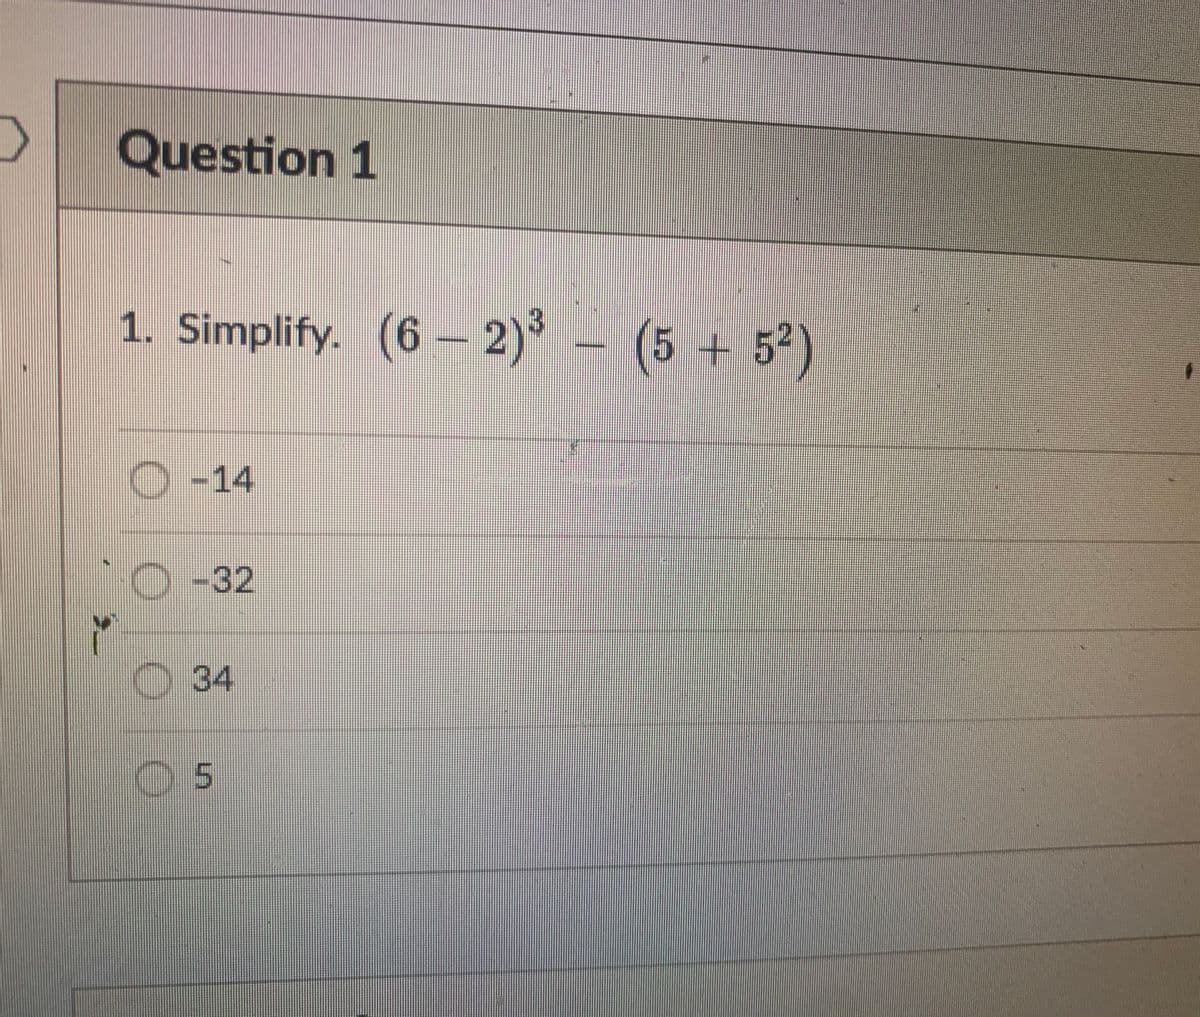 >
Question 1
1. Simplify. (6-2)³ (5+5²)
O-14
O-32
34
05